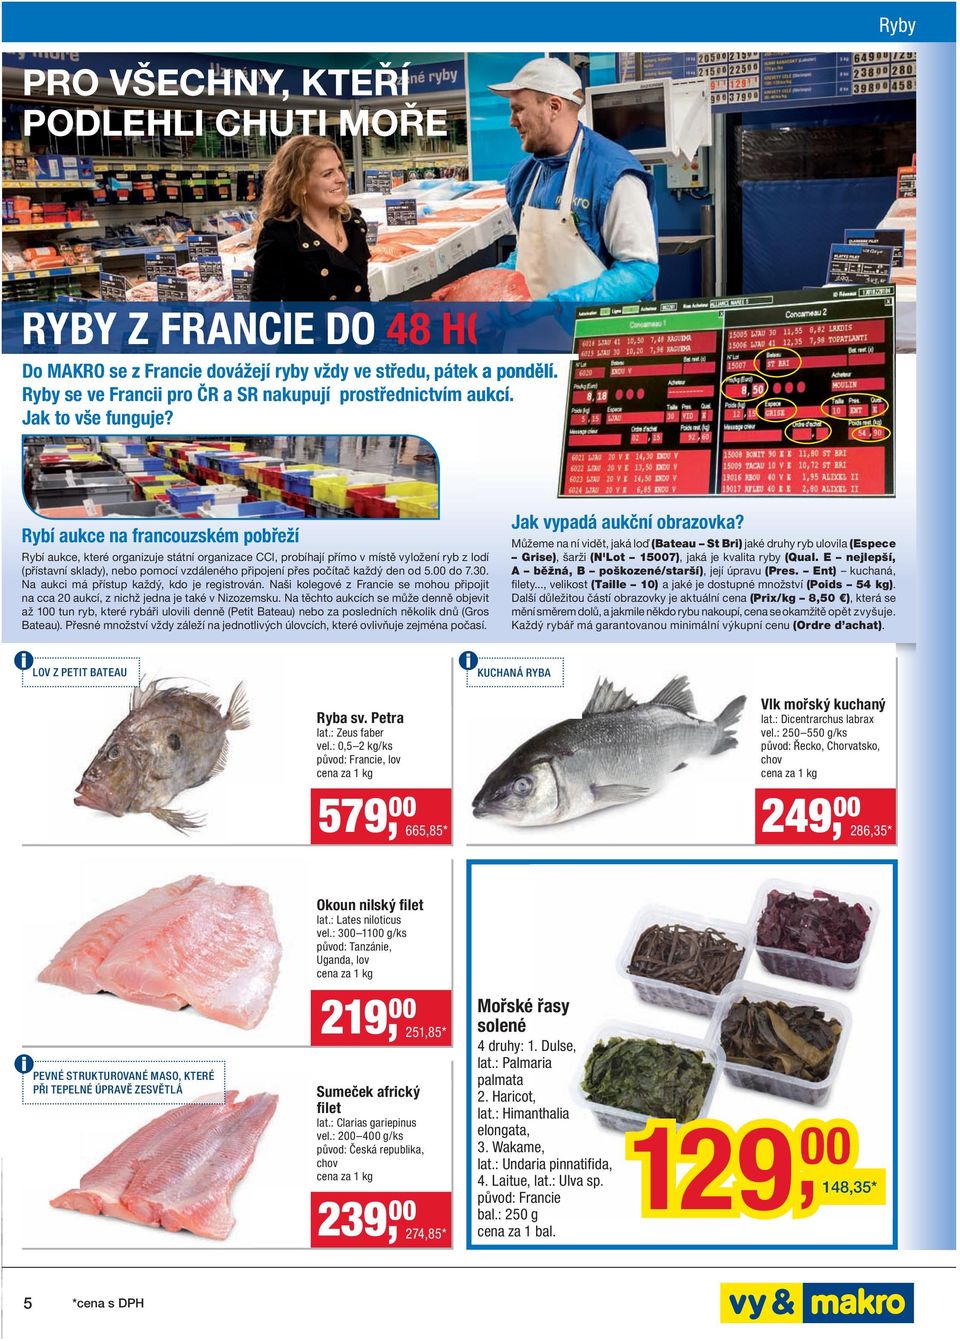 Rybí aukce na francouzském pobřeží Rybí aukce, které organizuje státní organizace CCI, probíhají přímo v místě vyložení ryb z lodí (přístavní sklady), nebo pomocí vzdáleného připojení přes počítač